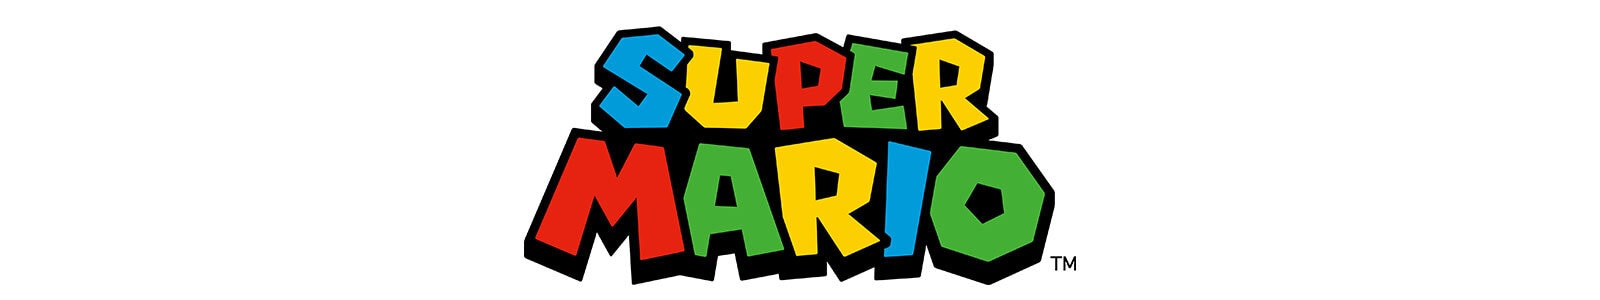 Super Mario Versiering